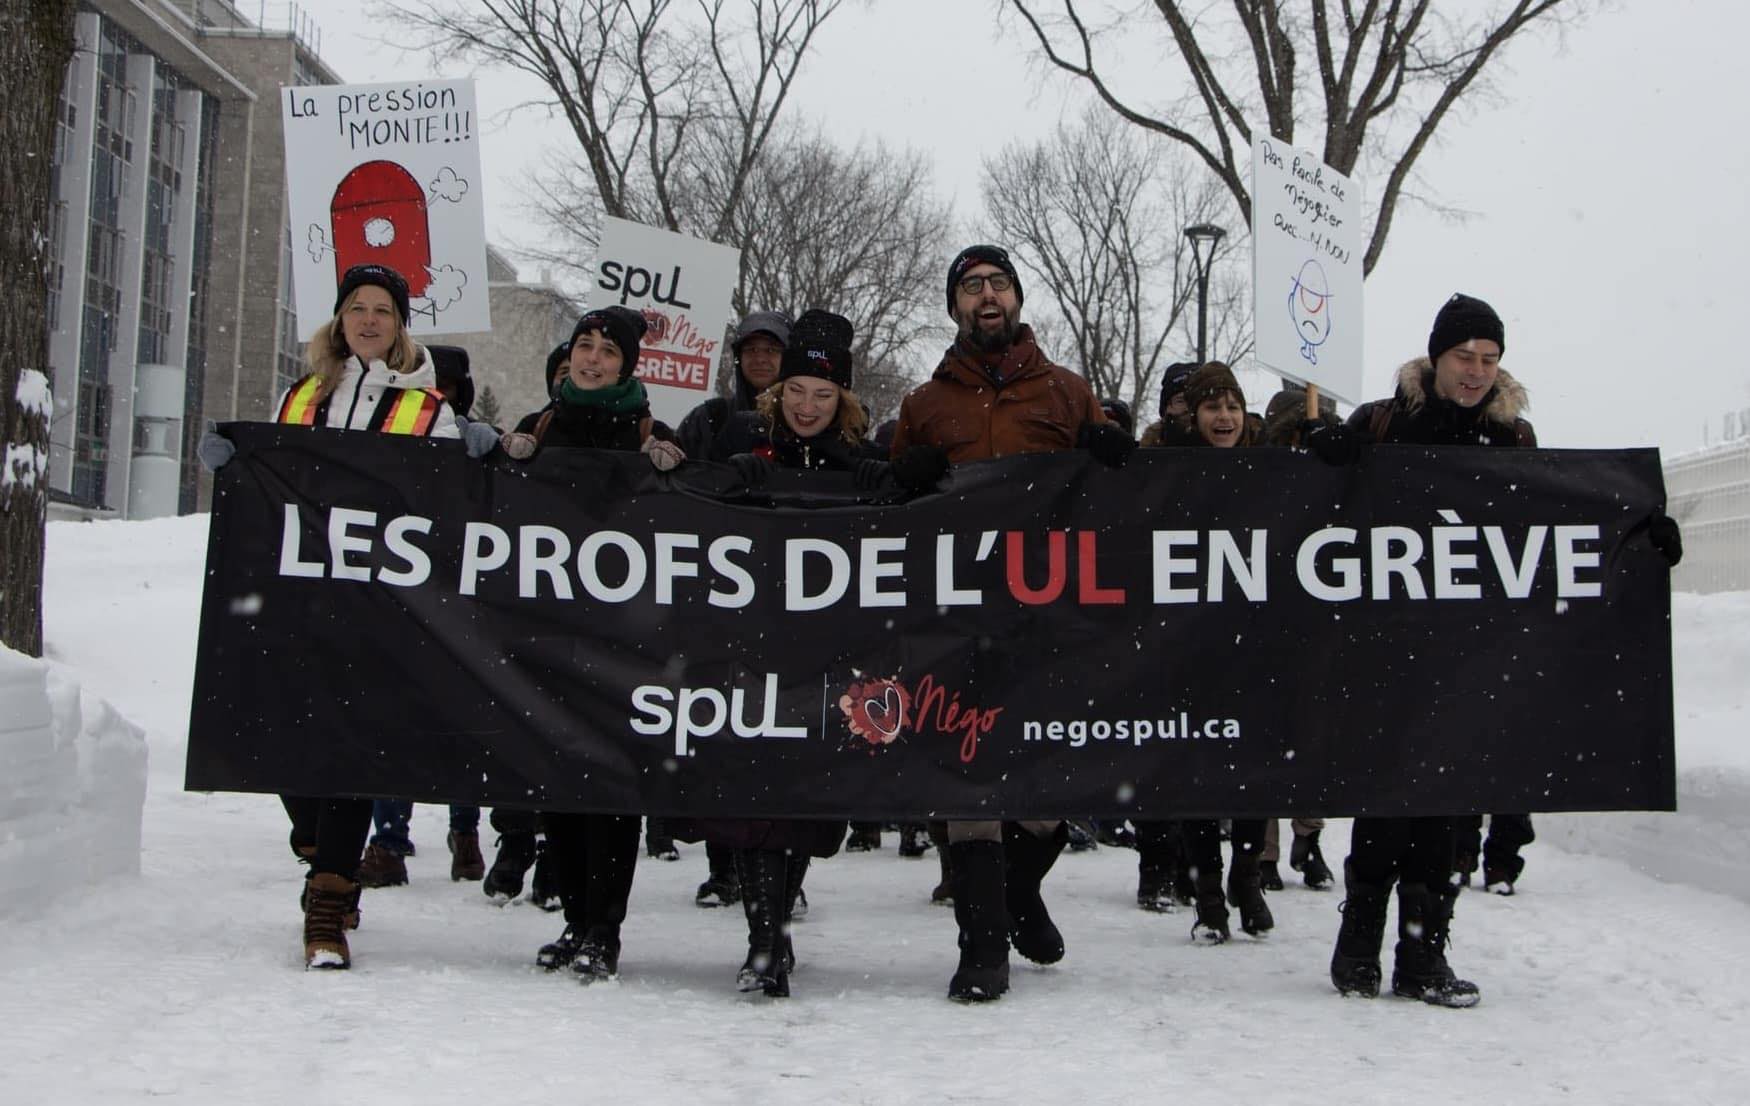 Les profs de l’Université Laval en grève